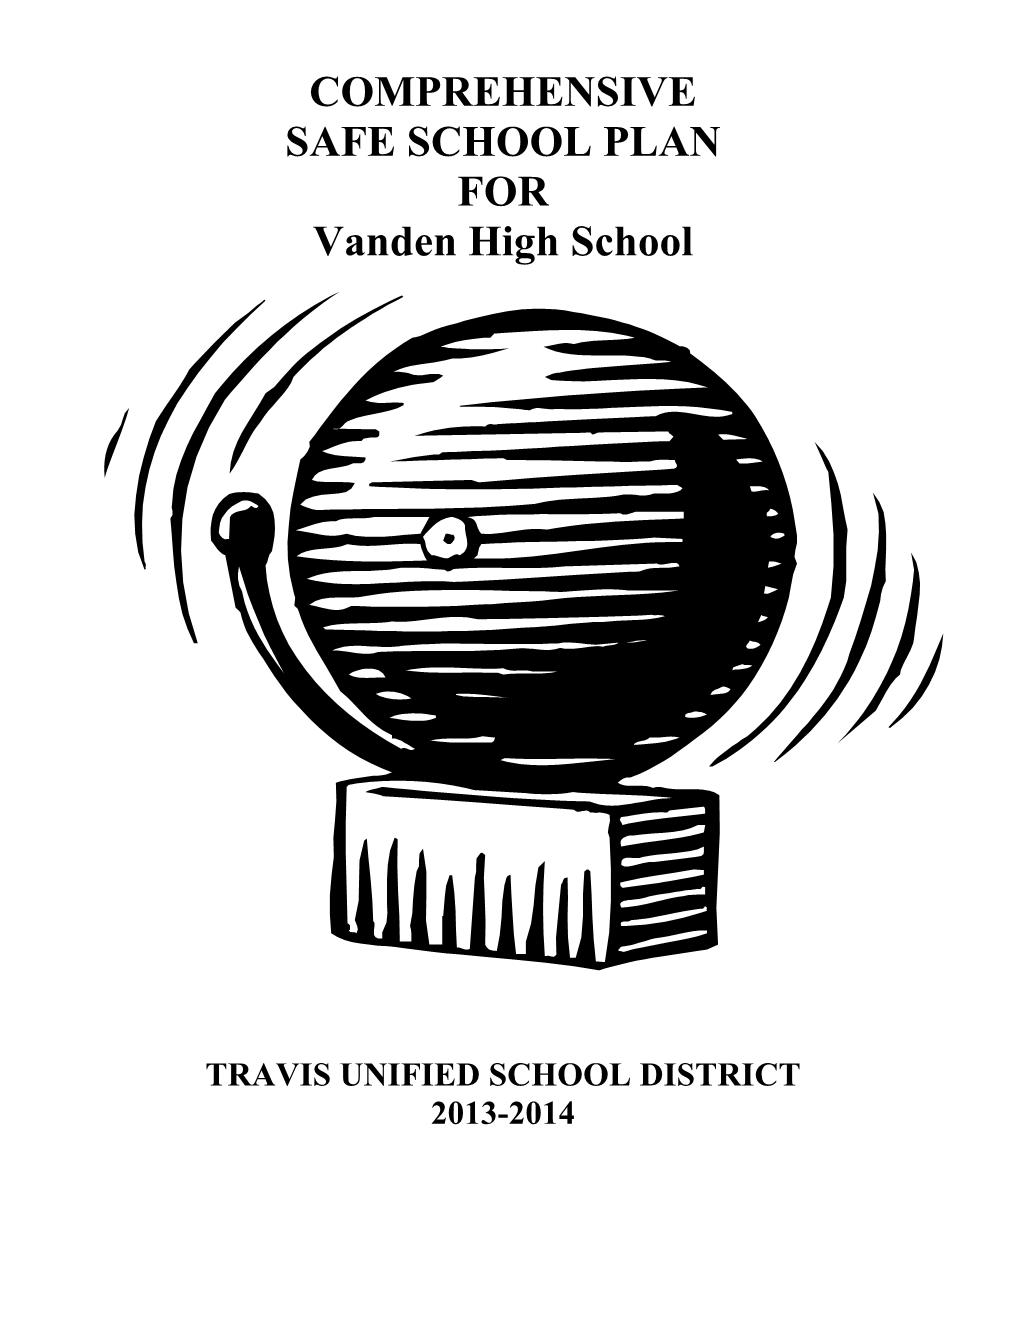 COMPREHENSIVE SAFE SCHOOL PLAN for Vanden High School